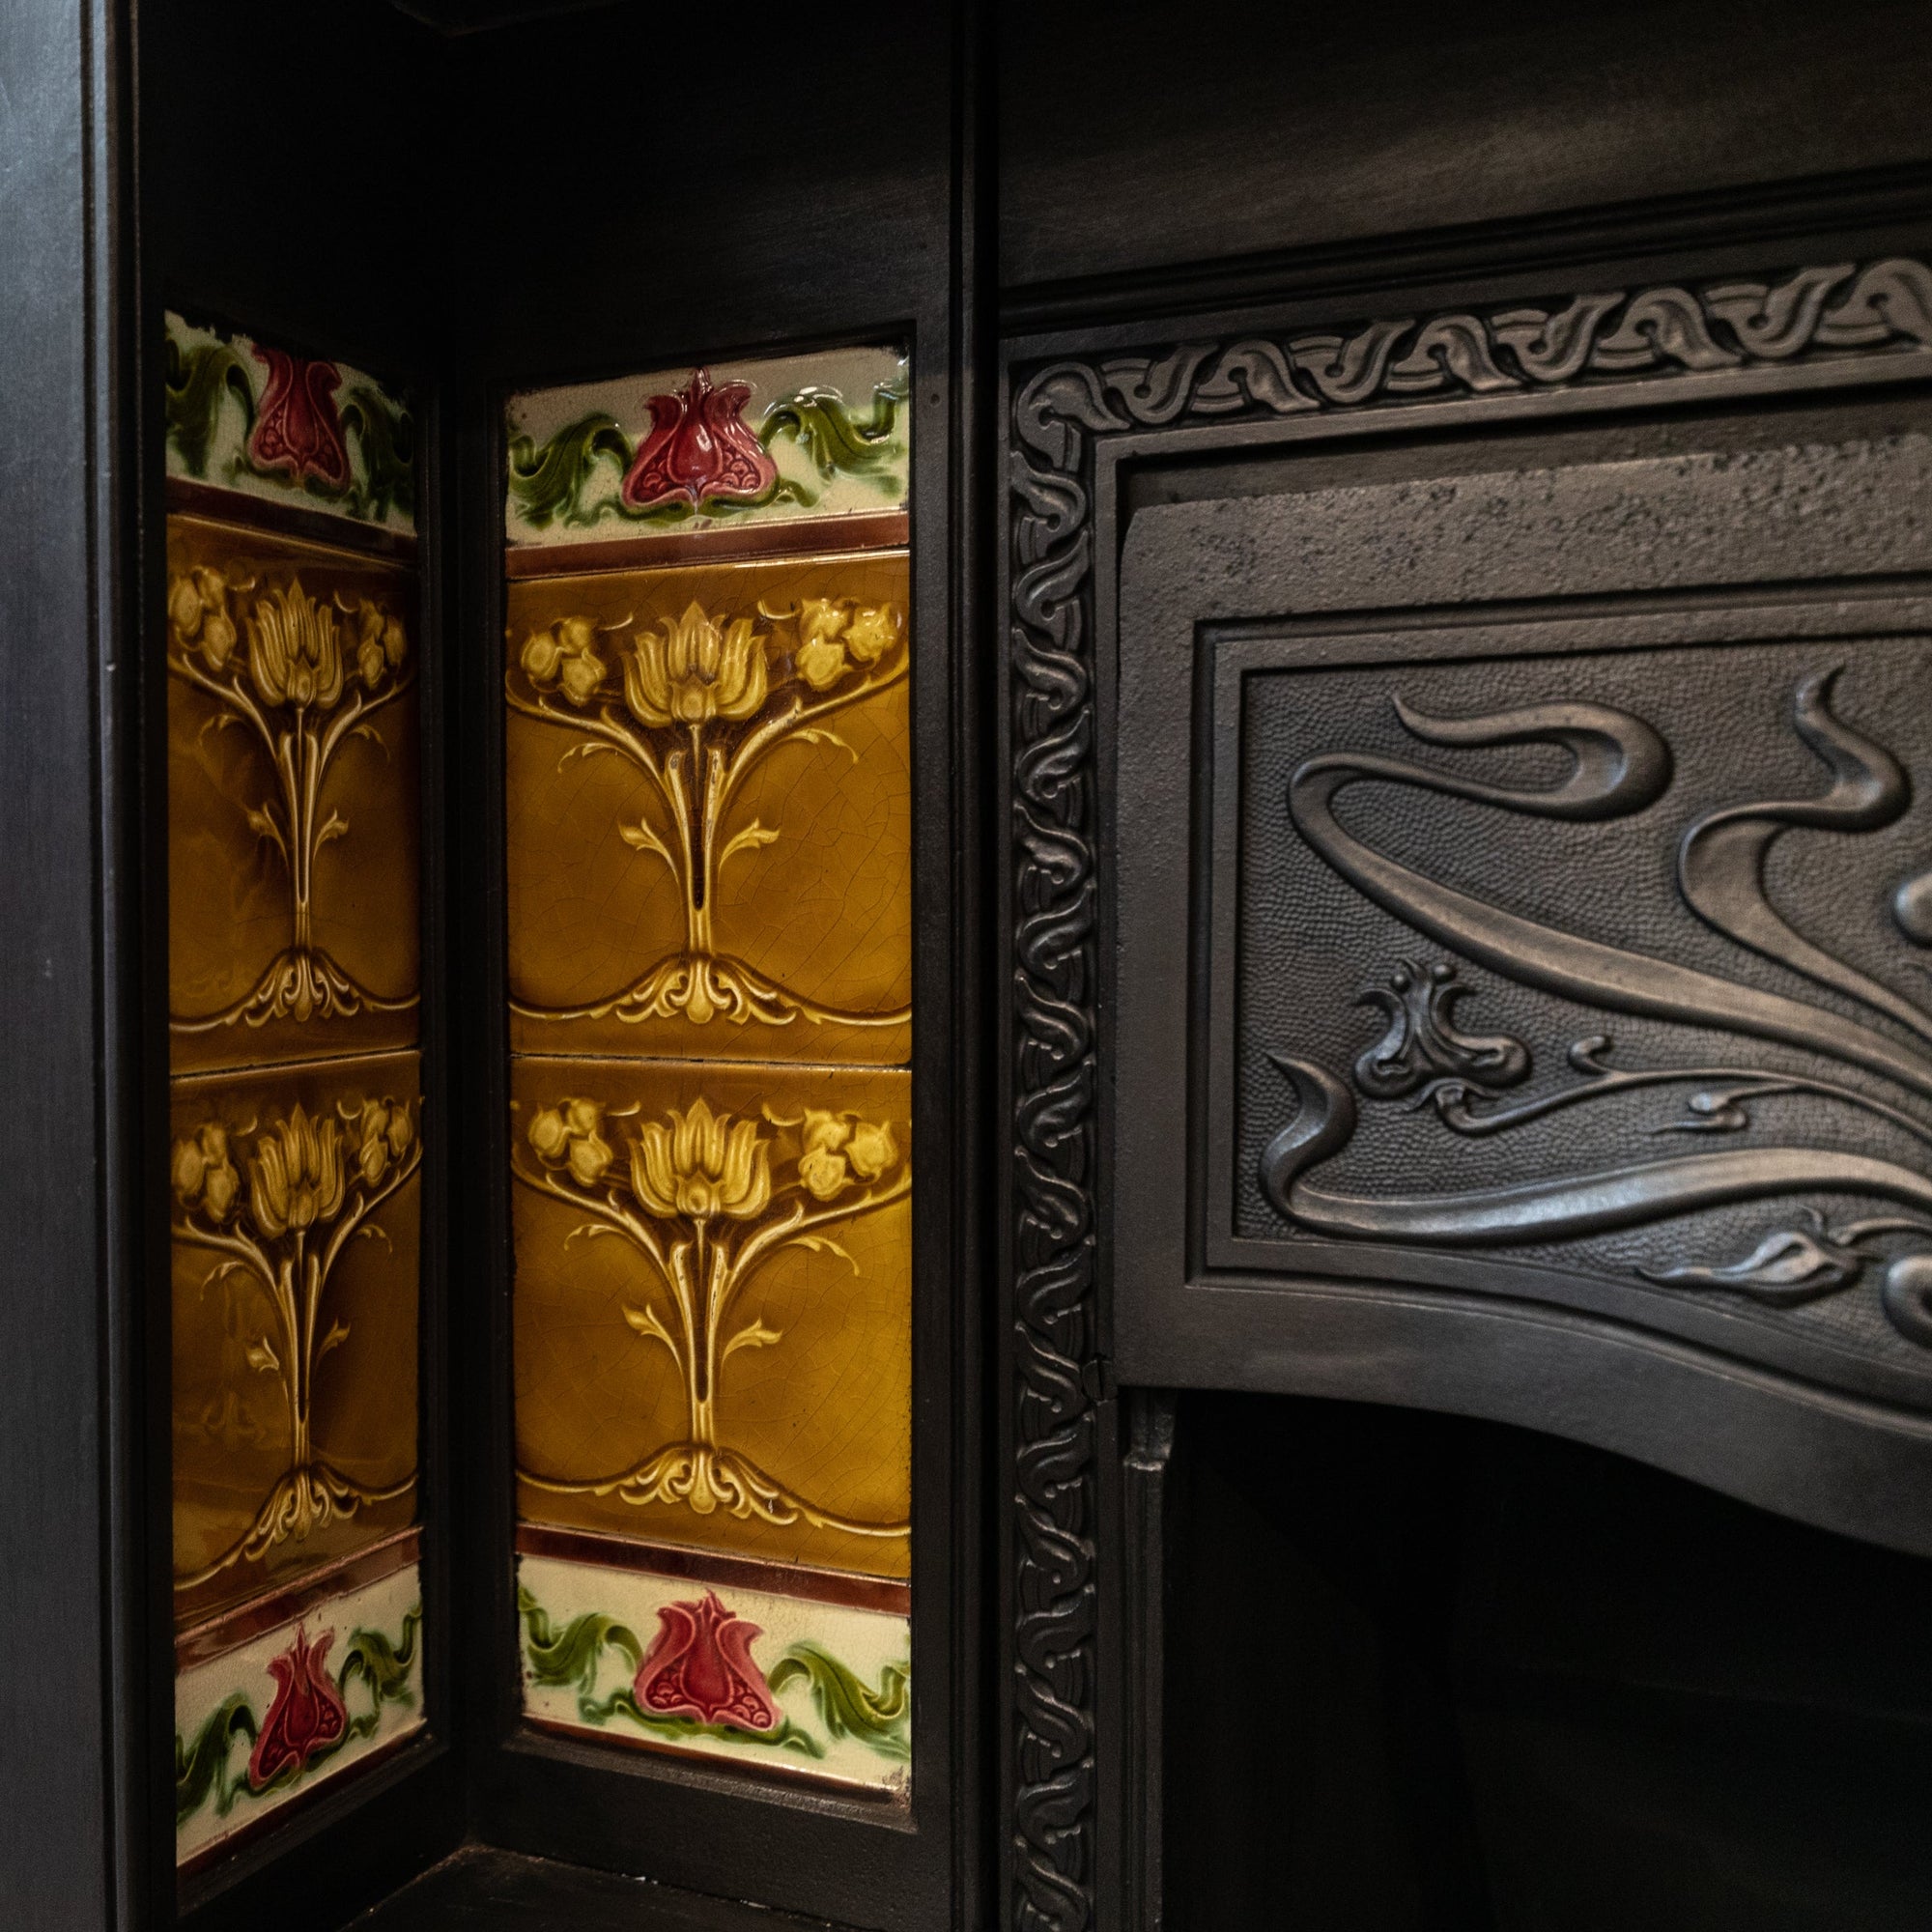 Large Antique Art Nouveau Cast Iron Tiled Fireplace Insert | The Architectural Forum